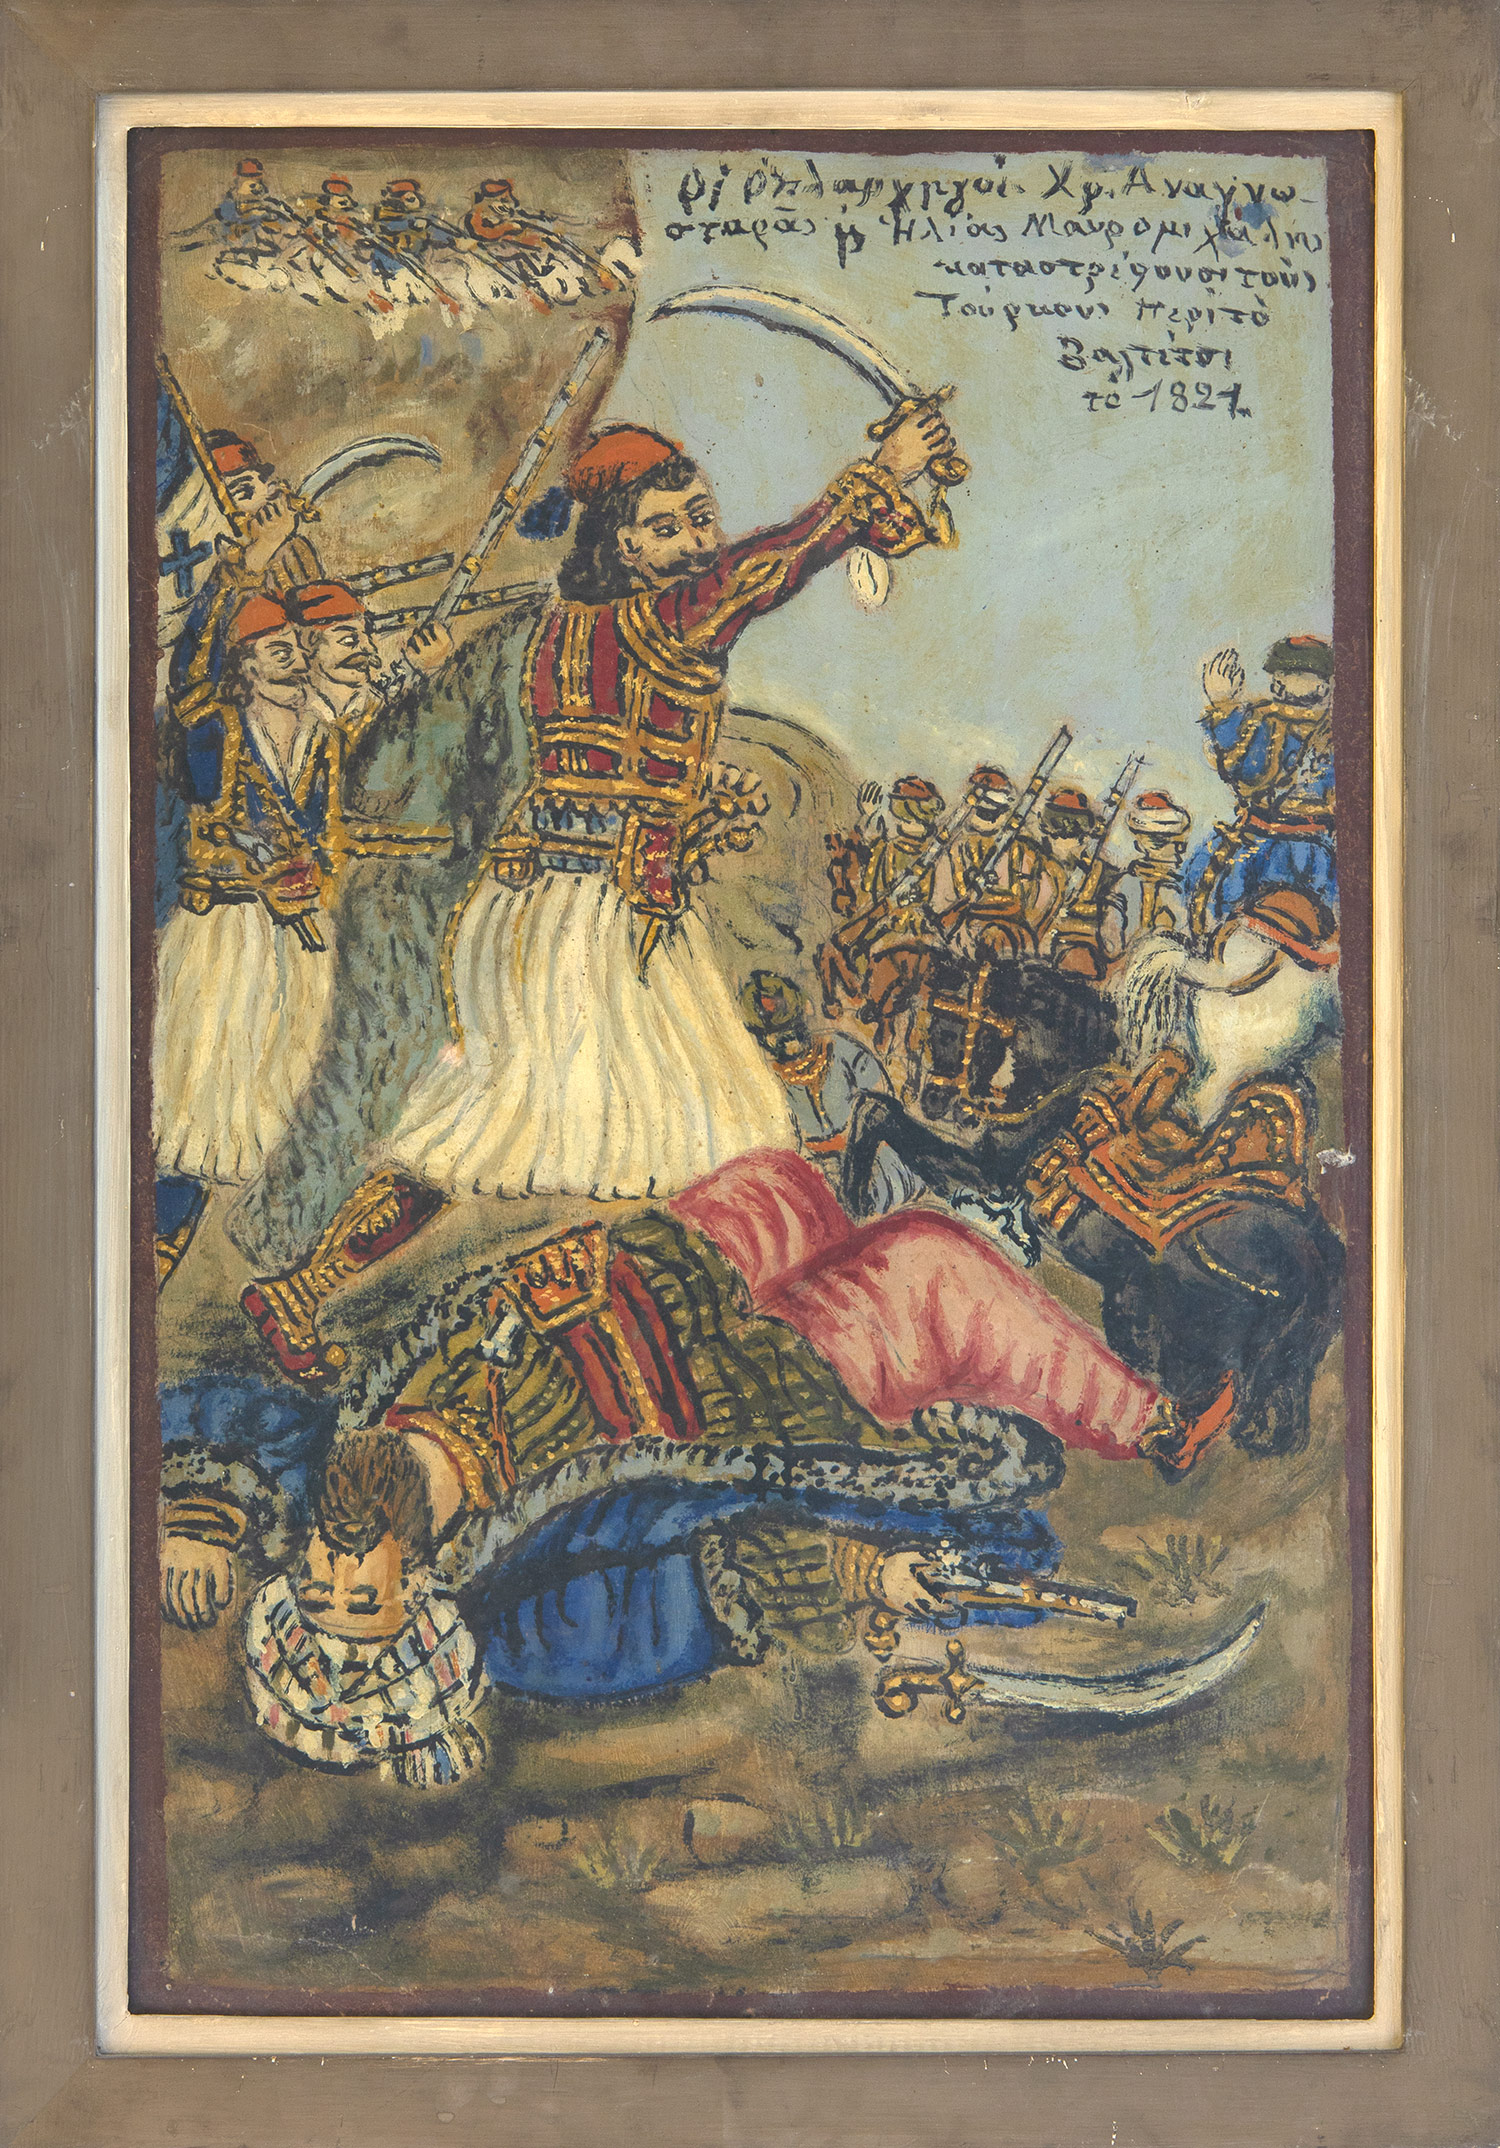 Οι οπλαρχηγοί Χρ. Αναγνωσταράς και Ηλίας Μαυρομιχάλης καταστρέφουν τους Τούρκους περί το Βαλτέτσι το 1821